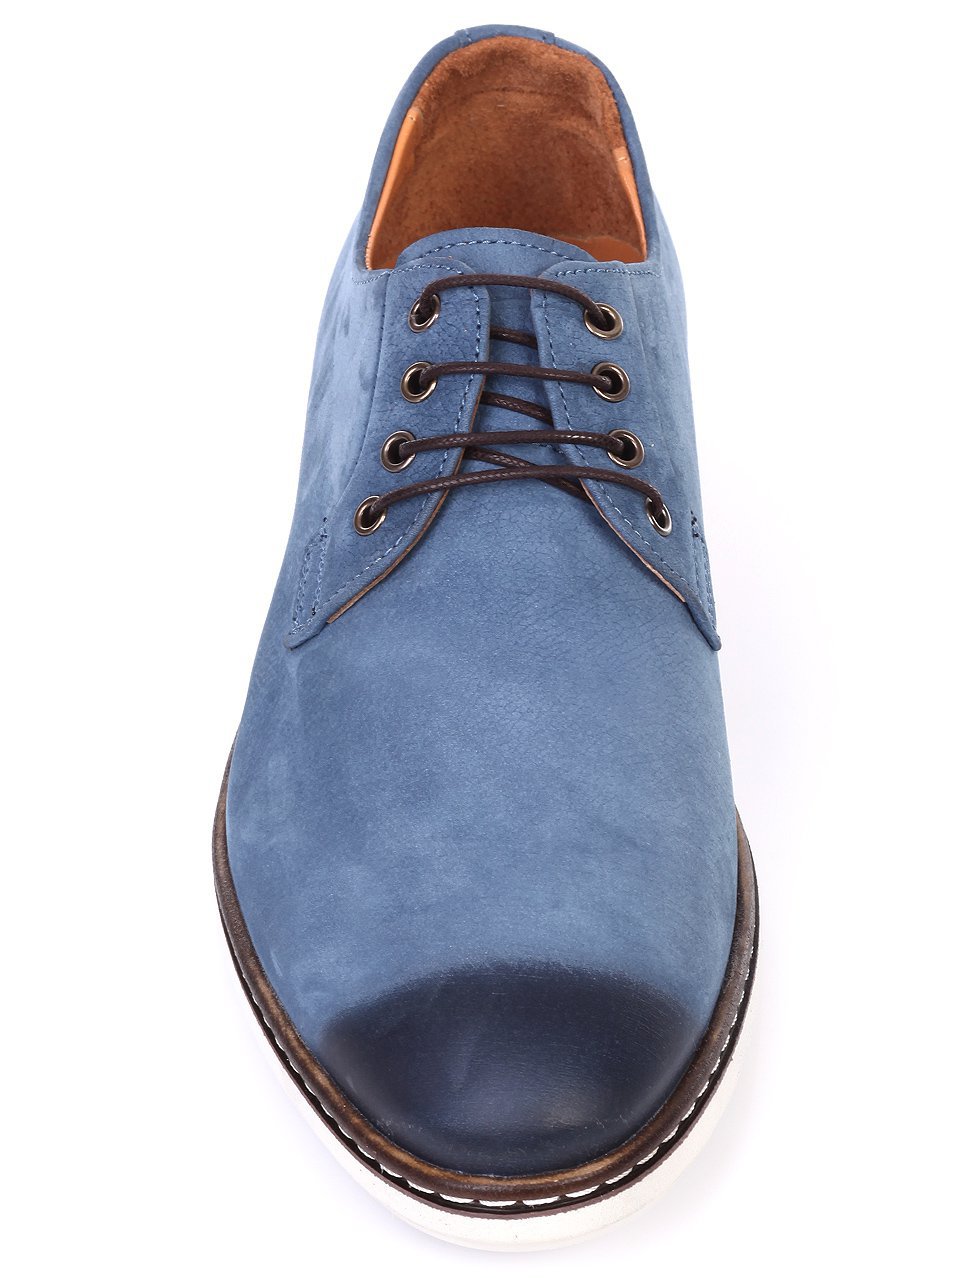 Официални мъжки обувки от естествена кожа в синьо 7AT-18581 blue